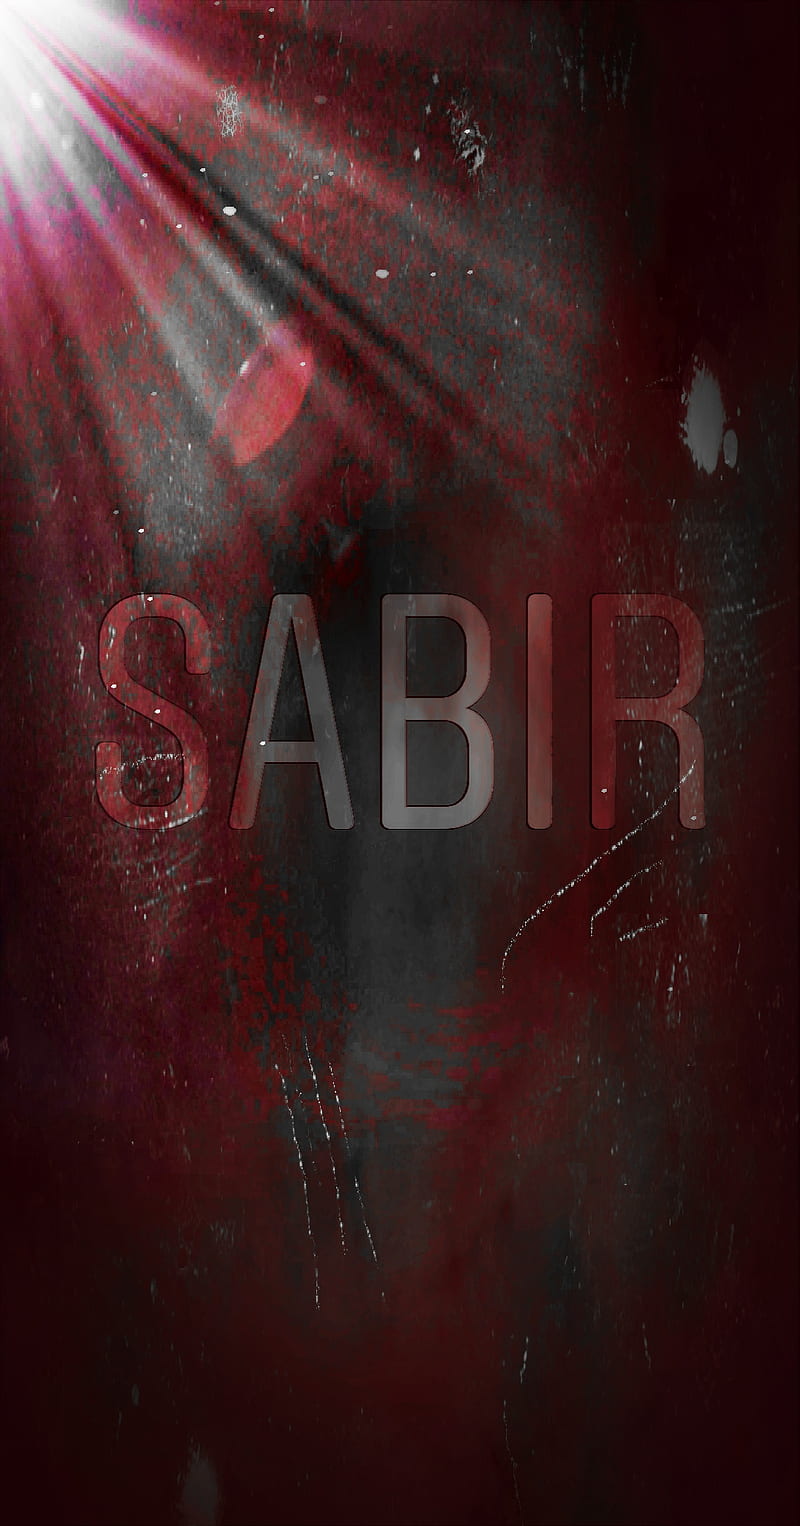 Sabir, hayata karsi sabir, sonu selamet, HD phone wallpaper